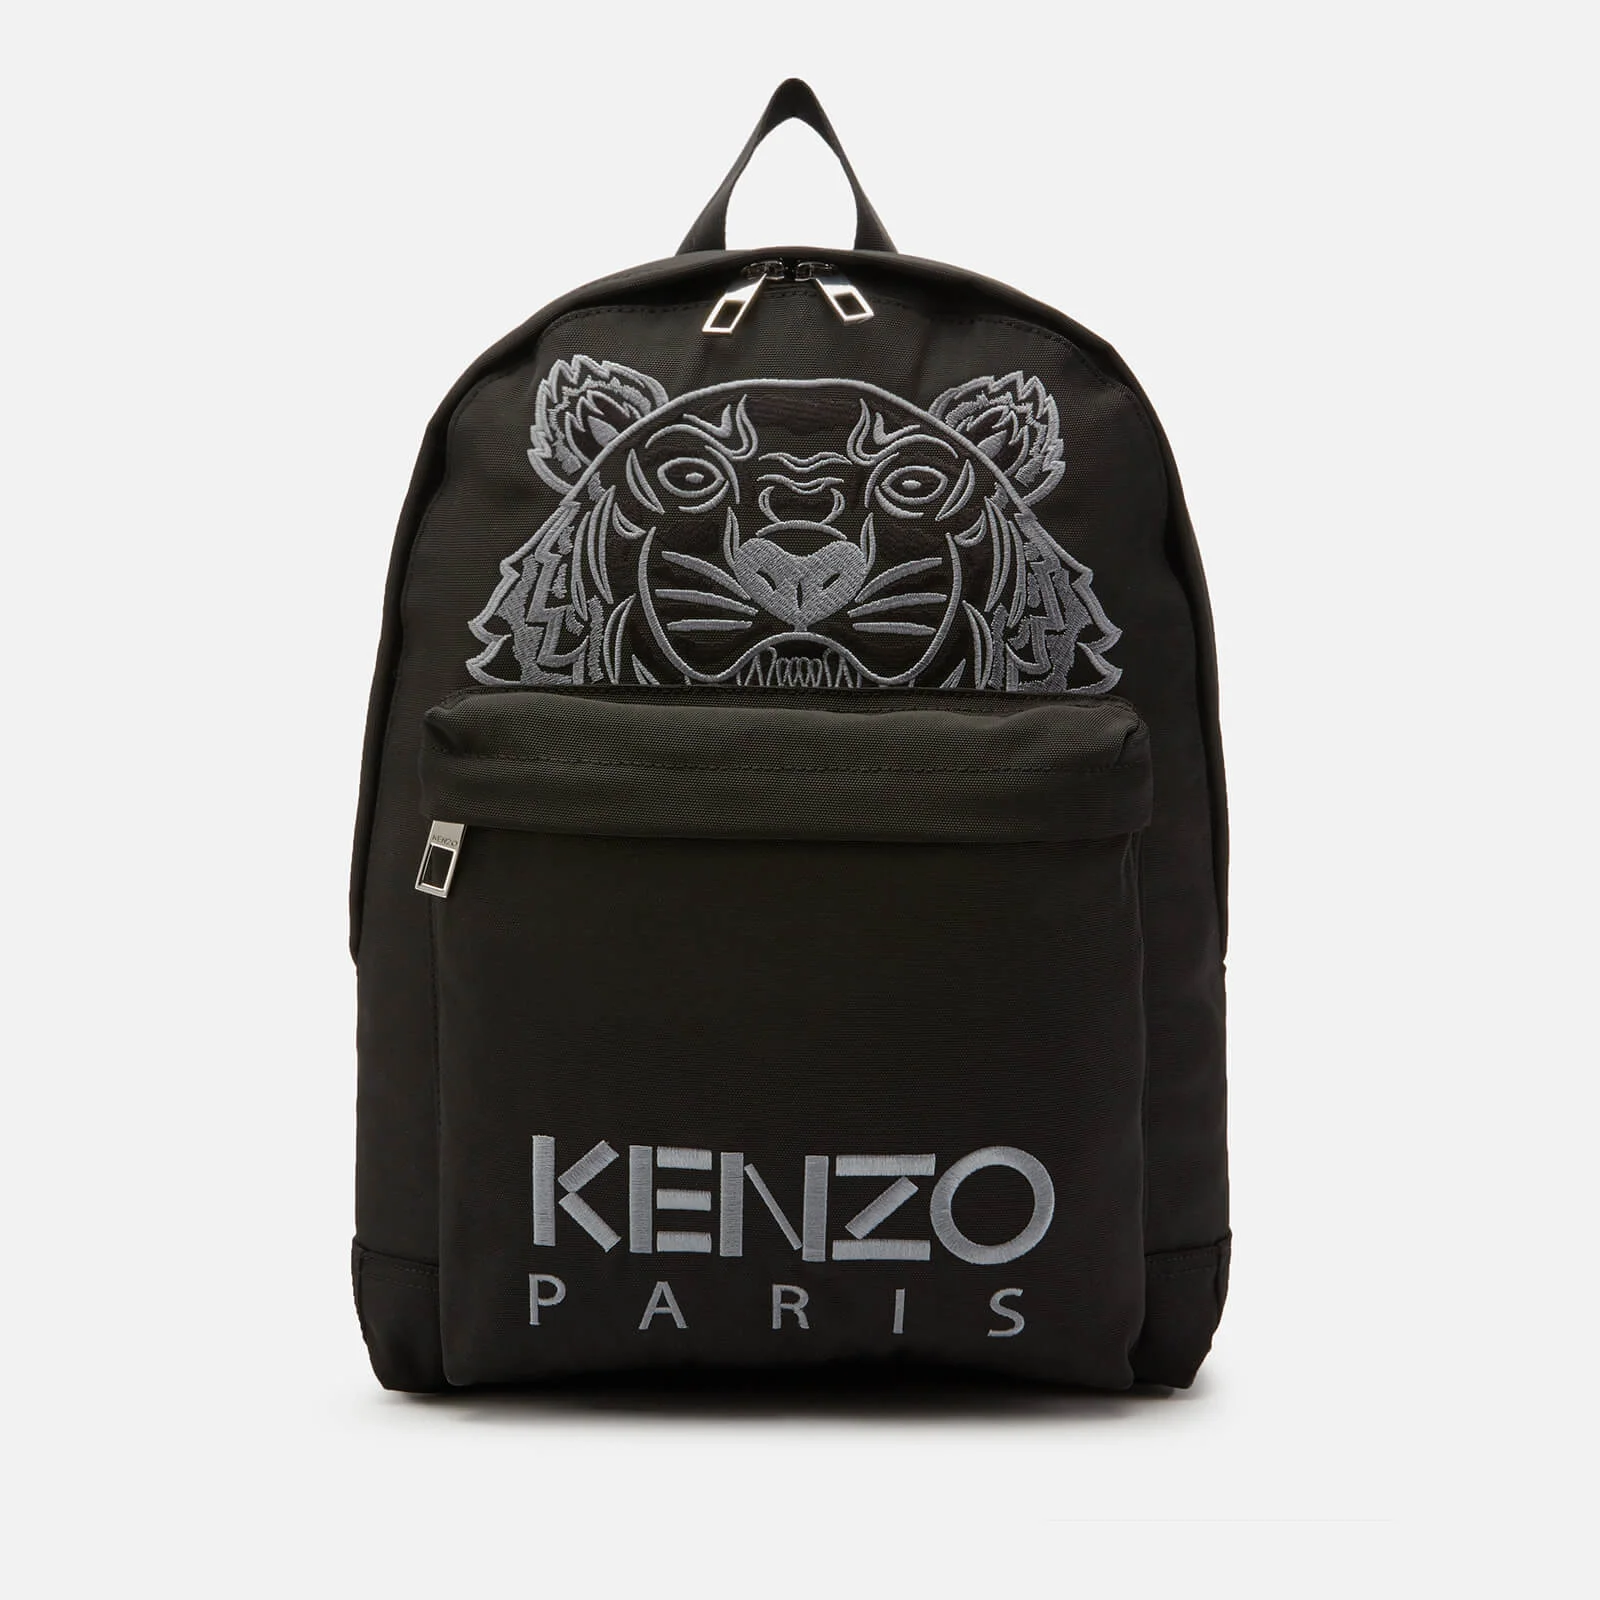 KENZO Men's Kanvas Tiger Rucksack - Black Image 1